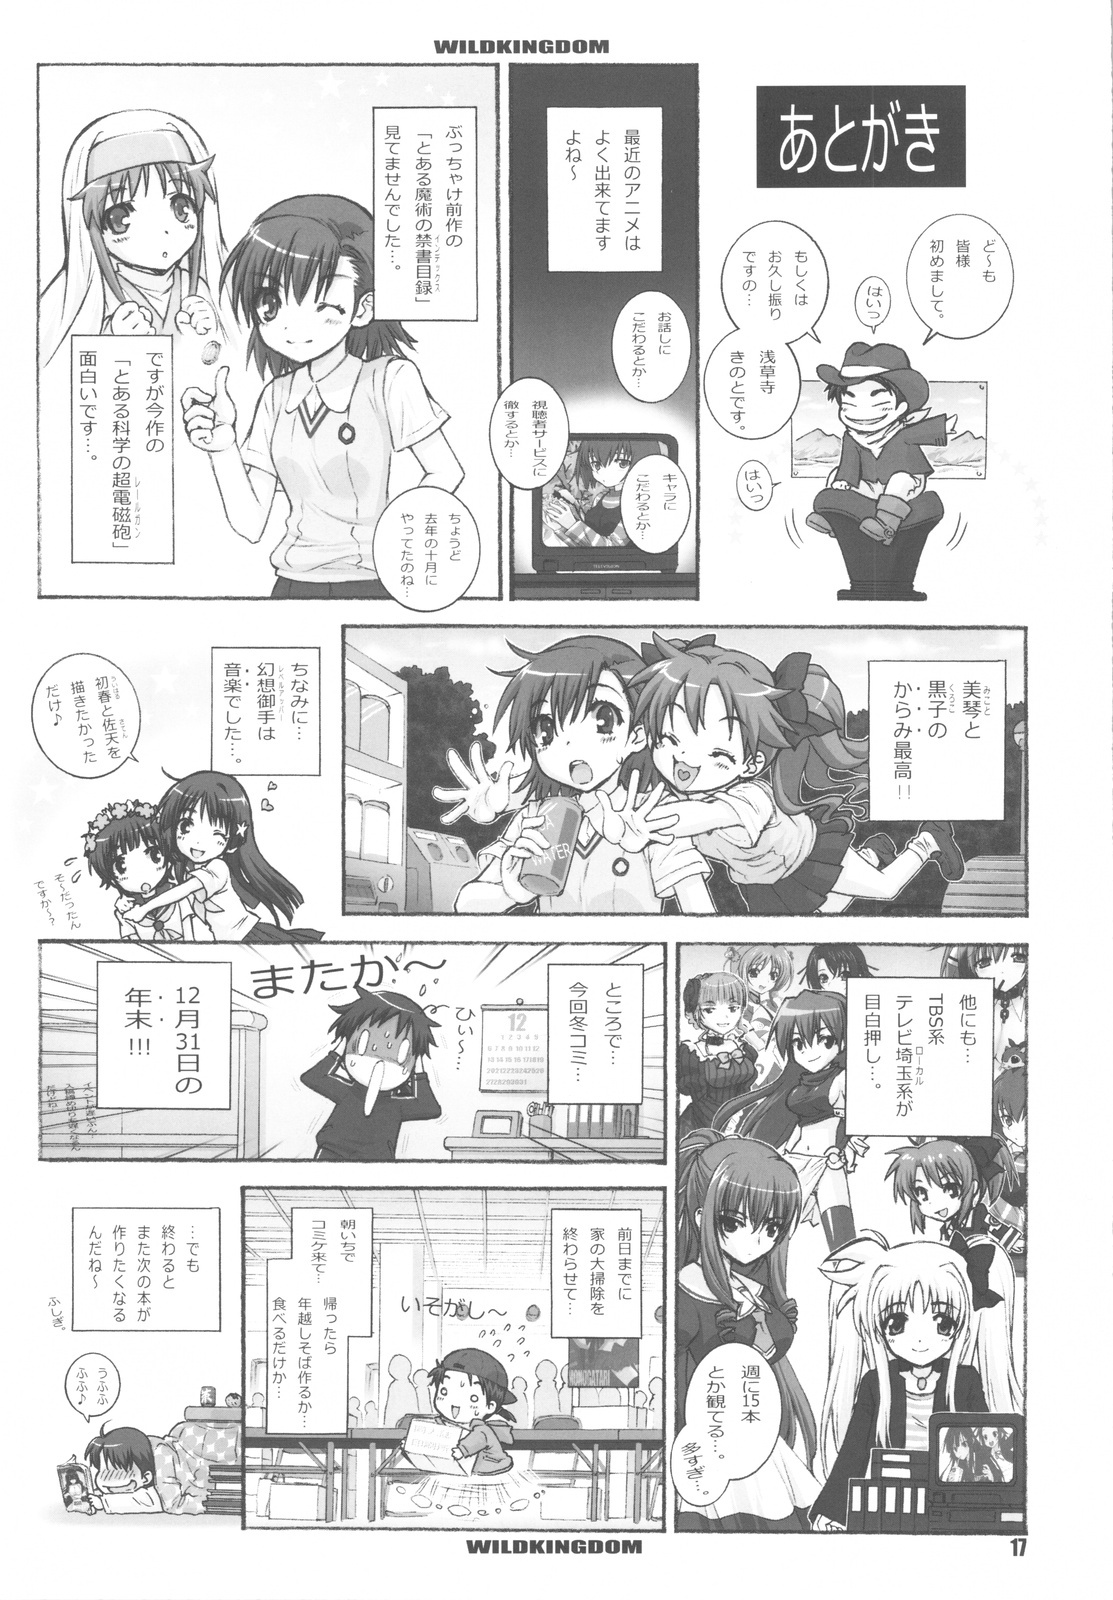 (C77) [Wild Kingdom (Sensouji Kinoto)] KuroKoto (Toaru Kagaku no Railgun) page 17 full